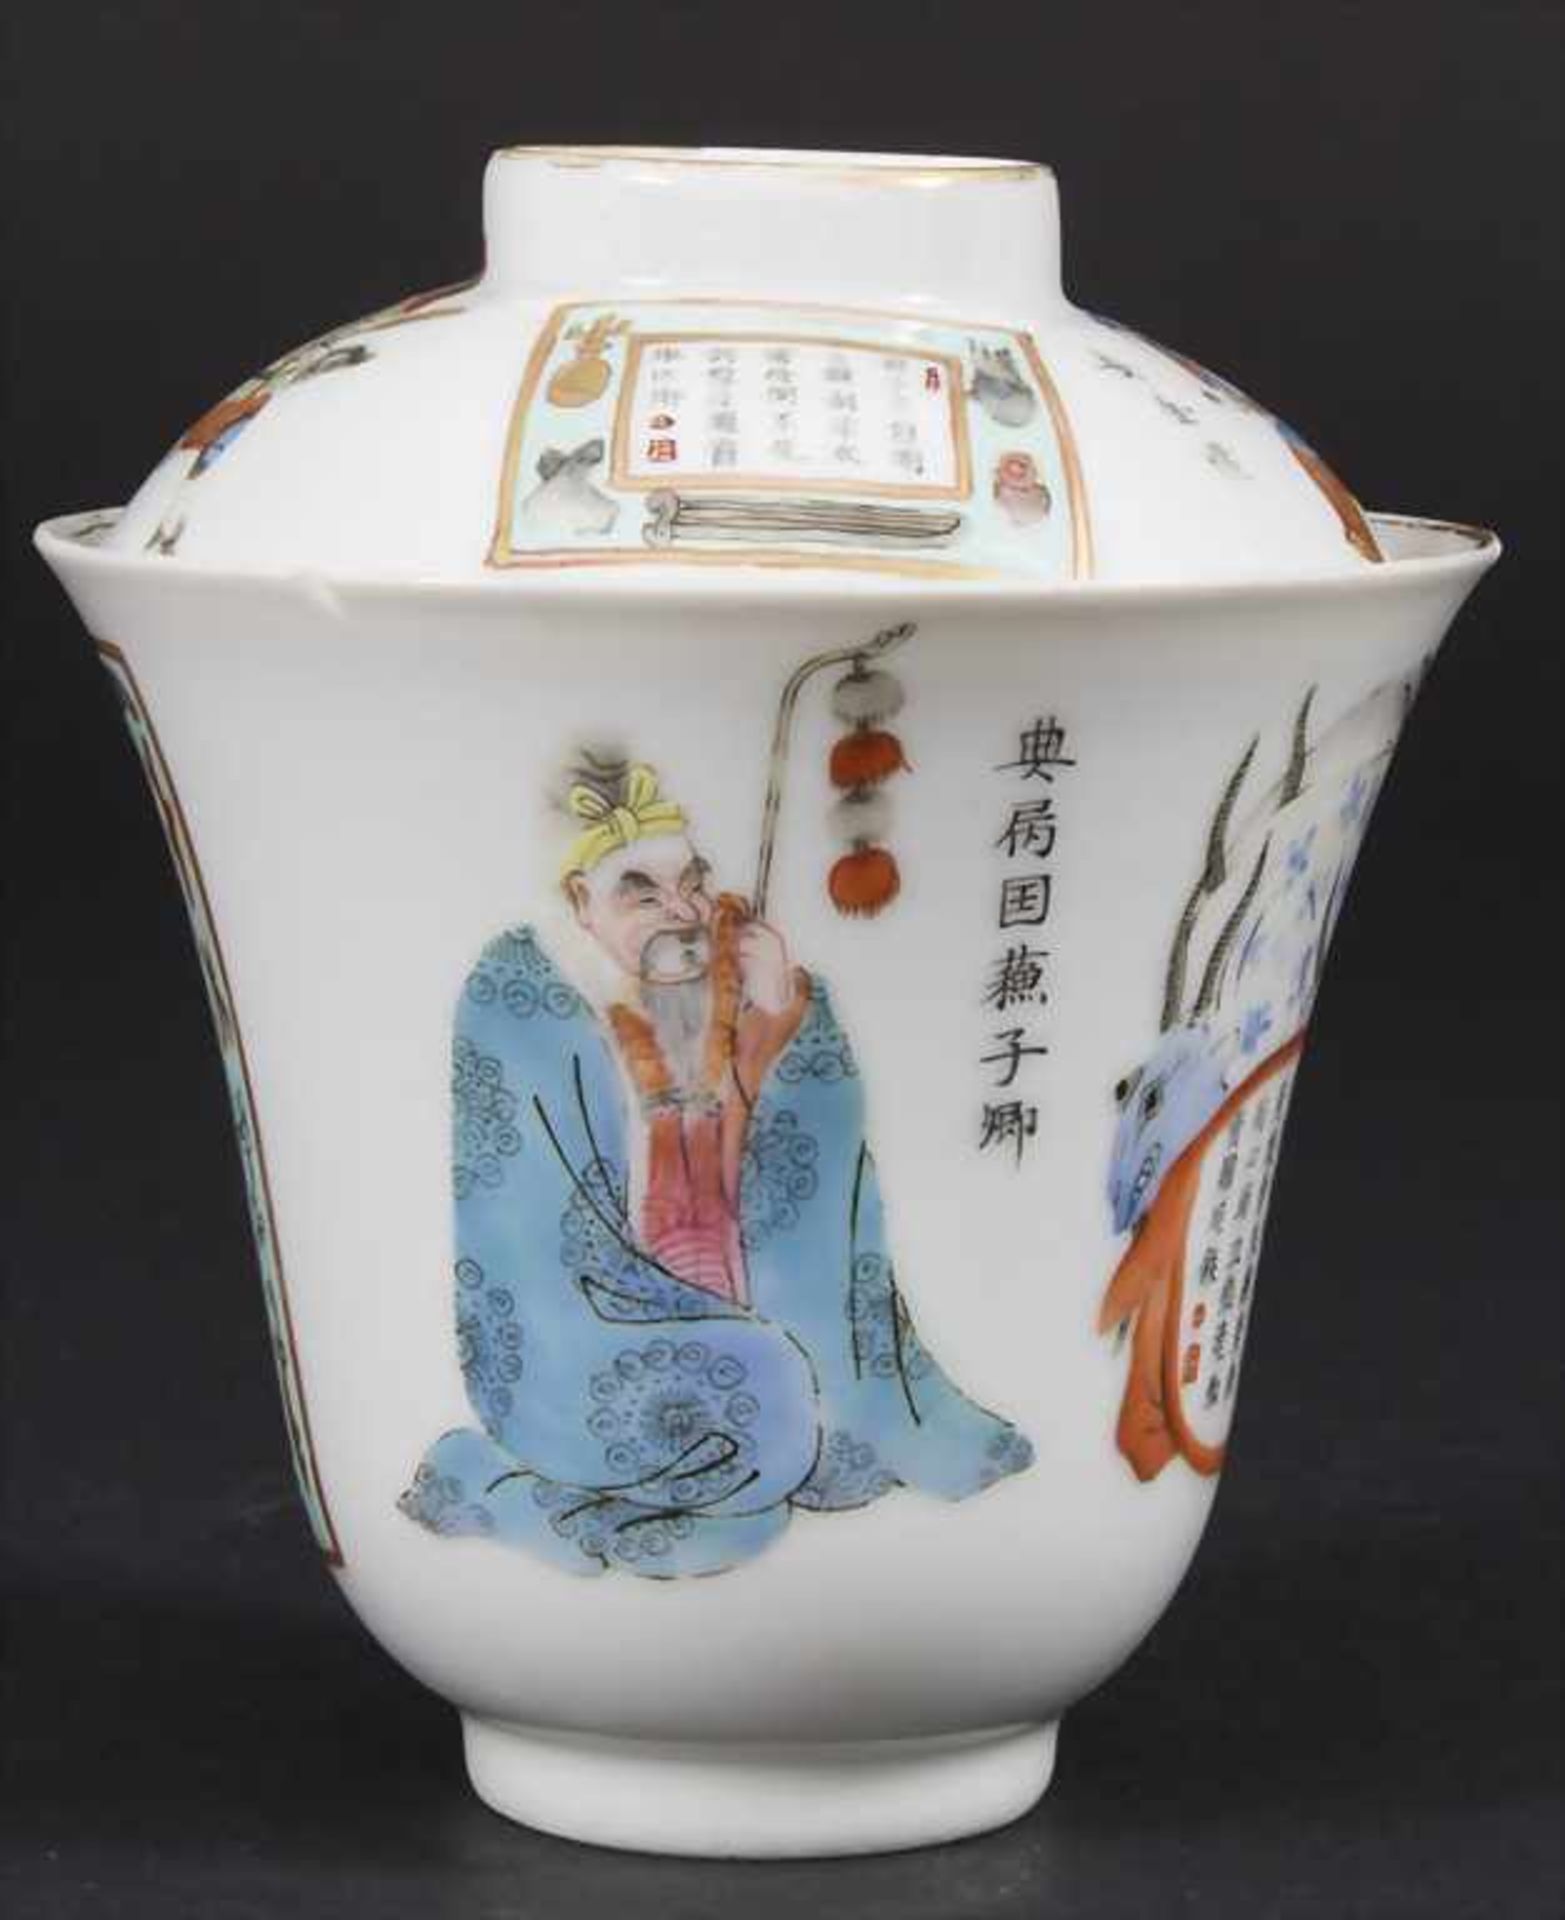 Porzellan-Deckelkumme / A porcelain lidded bowl, China, Qing-Dynastie (1644-1911), 18./19. Jh. - Bild 3 aus 6